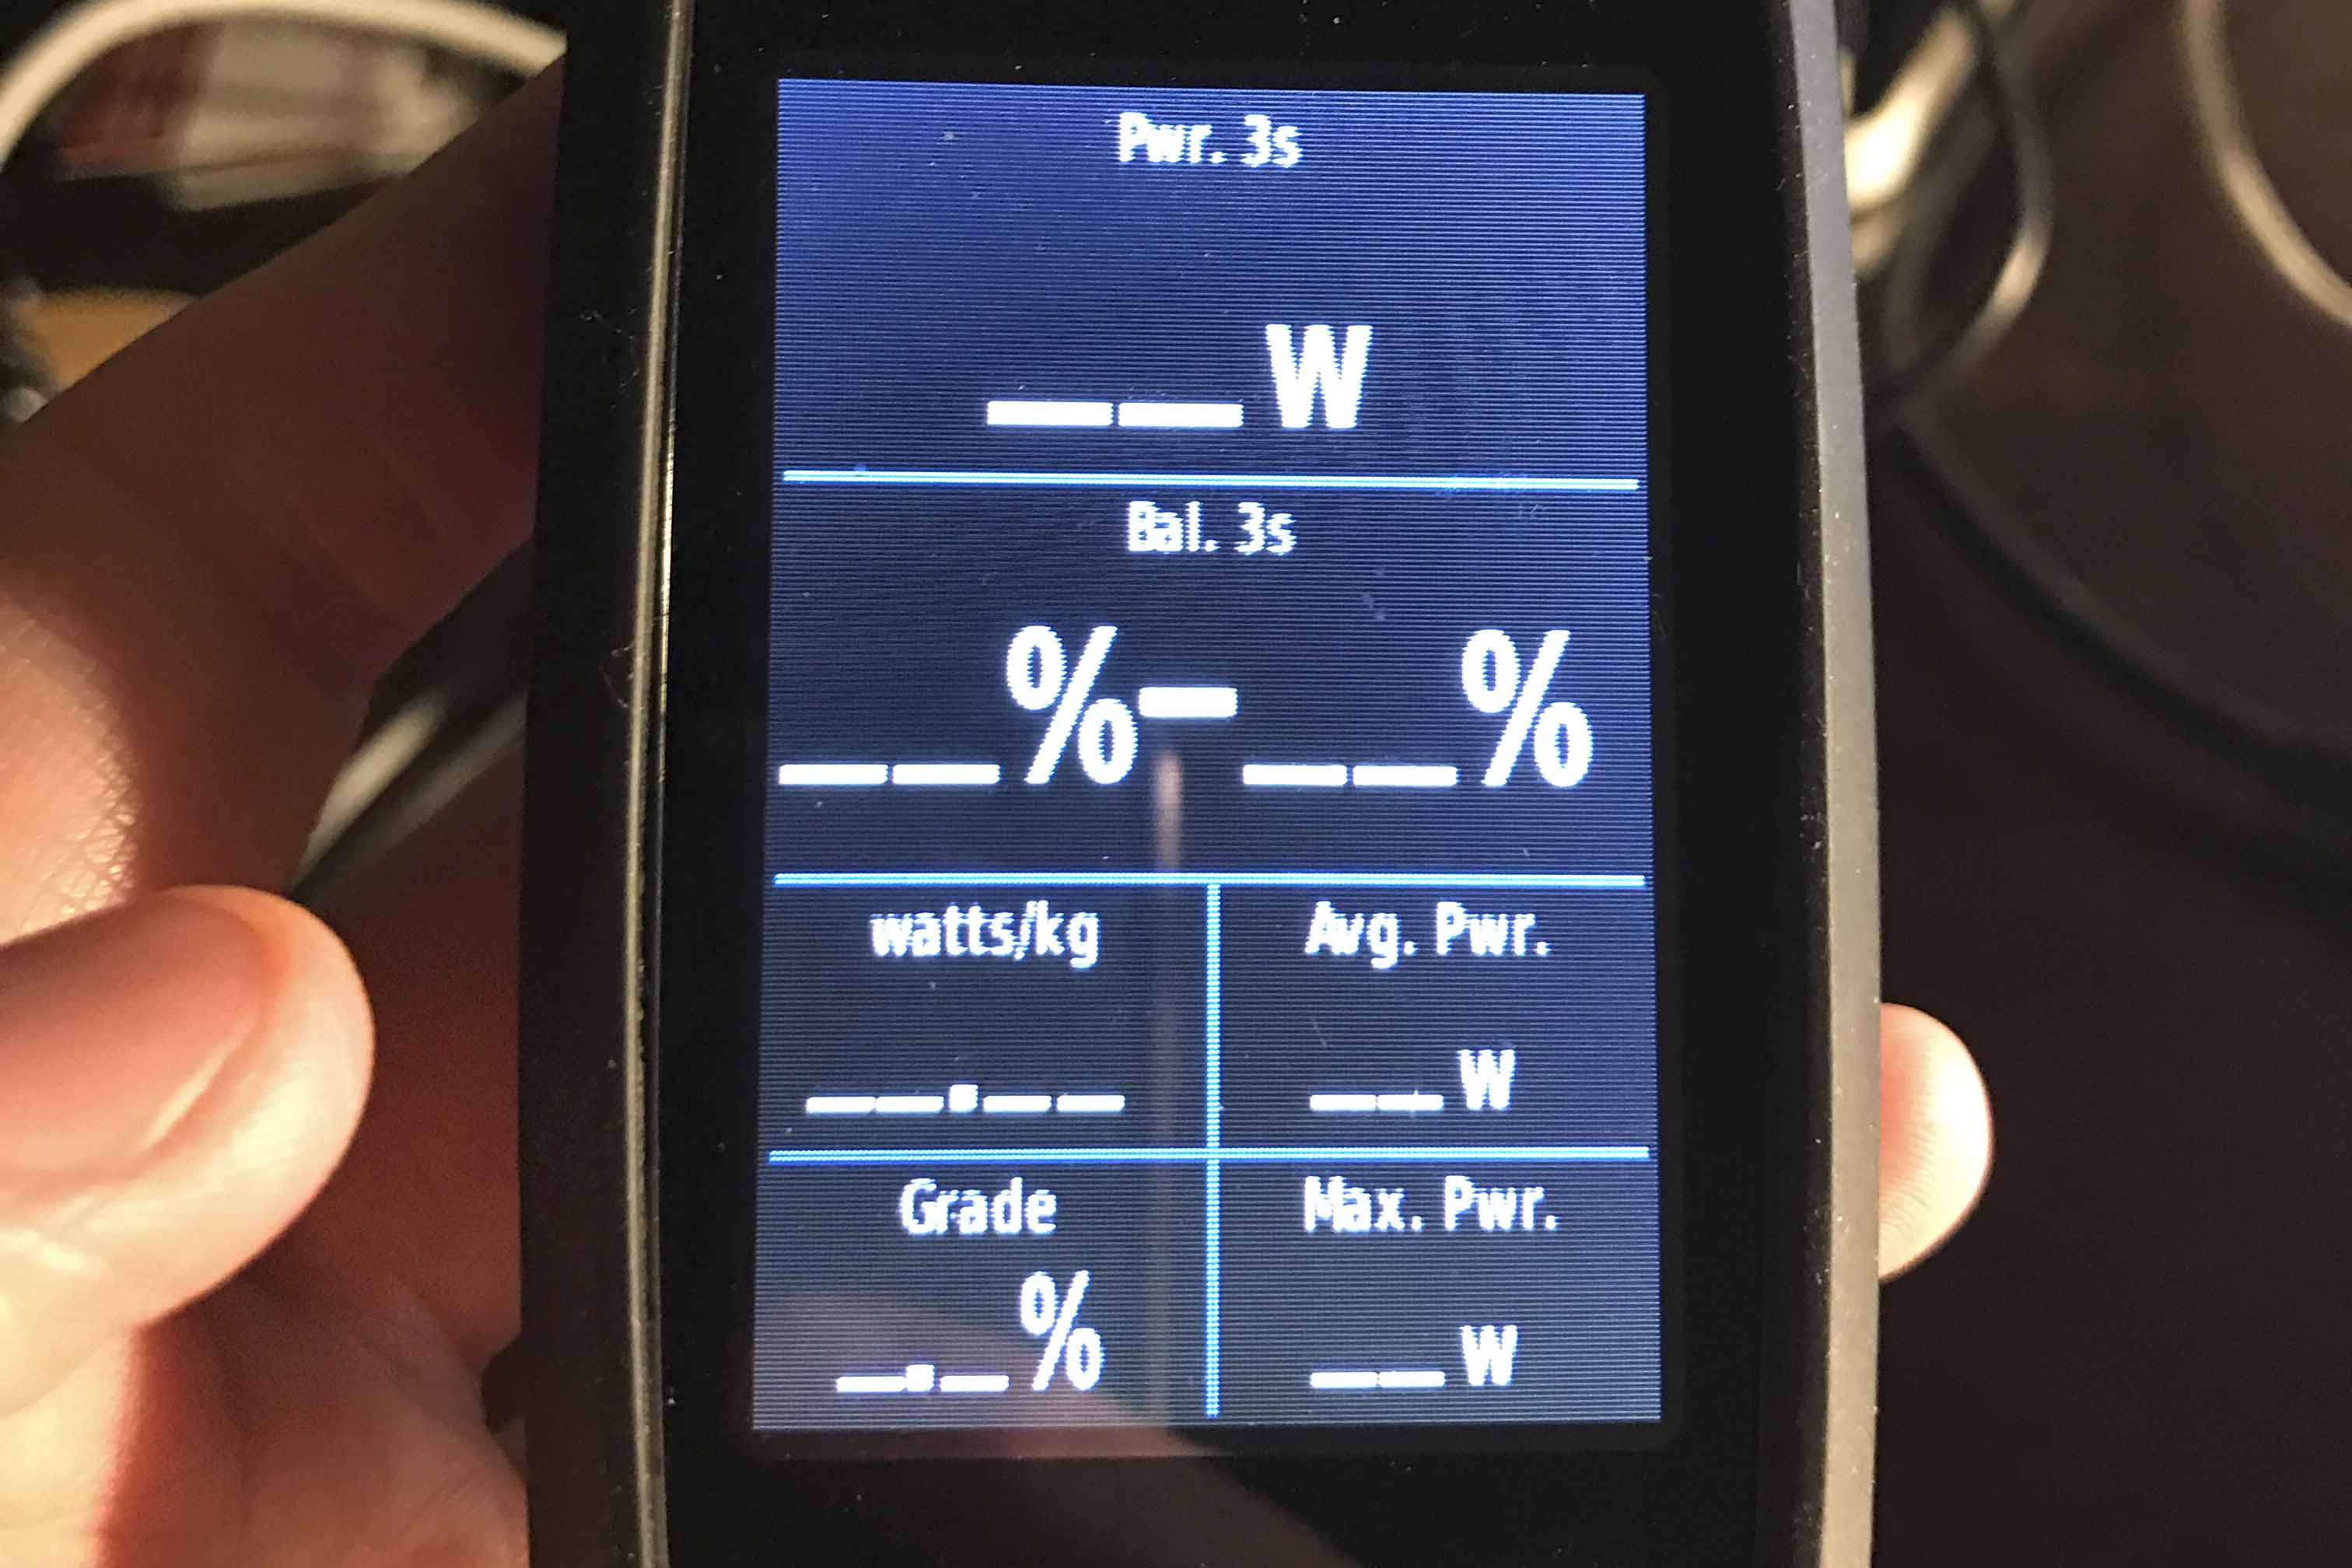 Garmin 810 cycling computer showing no metrics